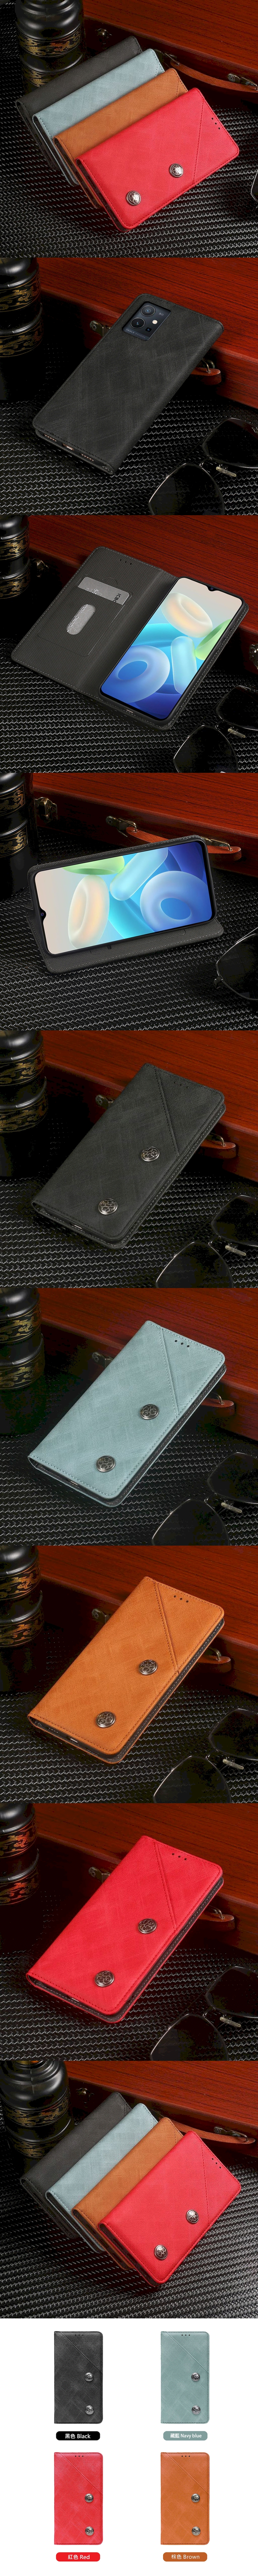 皮革保護套(MASK) - 復古隱藏微磁扣設計翻蓋式皮套手機套